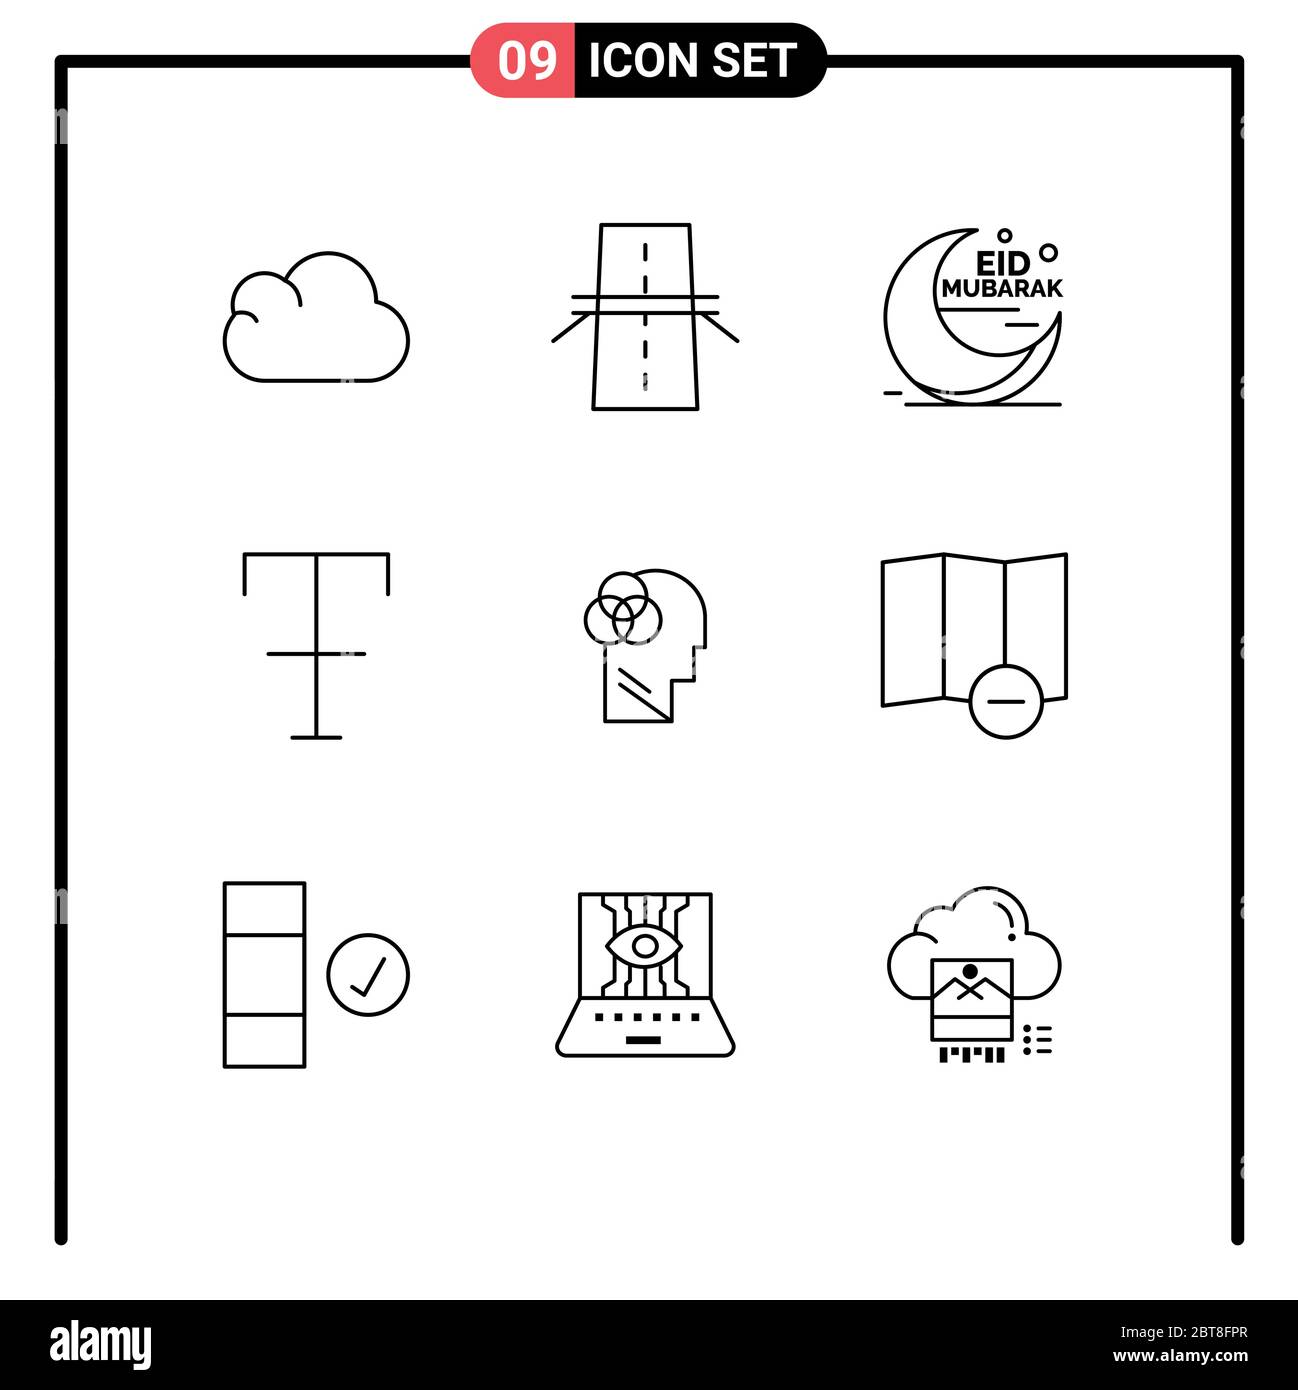 Pack de 9 symboles universels d'éléments de conception vectorielle humains, de grève, d'eid, de format, modifiables par des musulmans Illustration de Vecteur